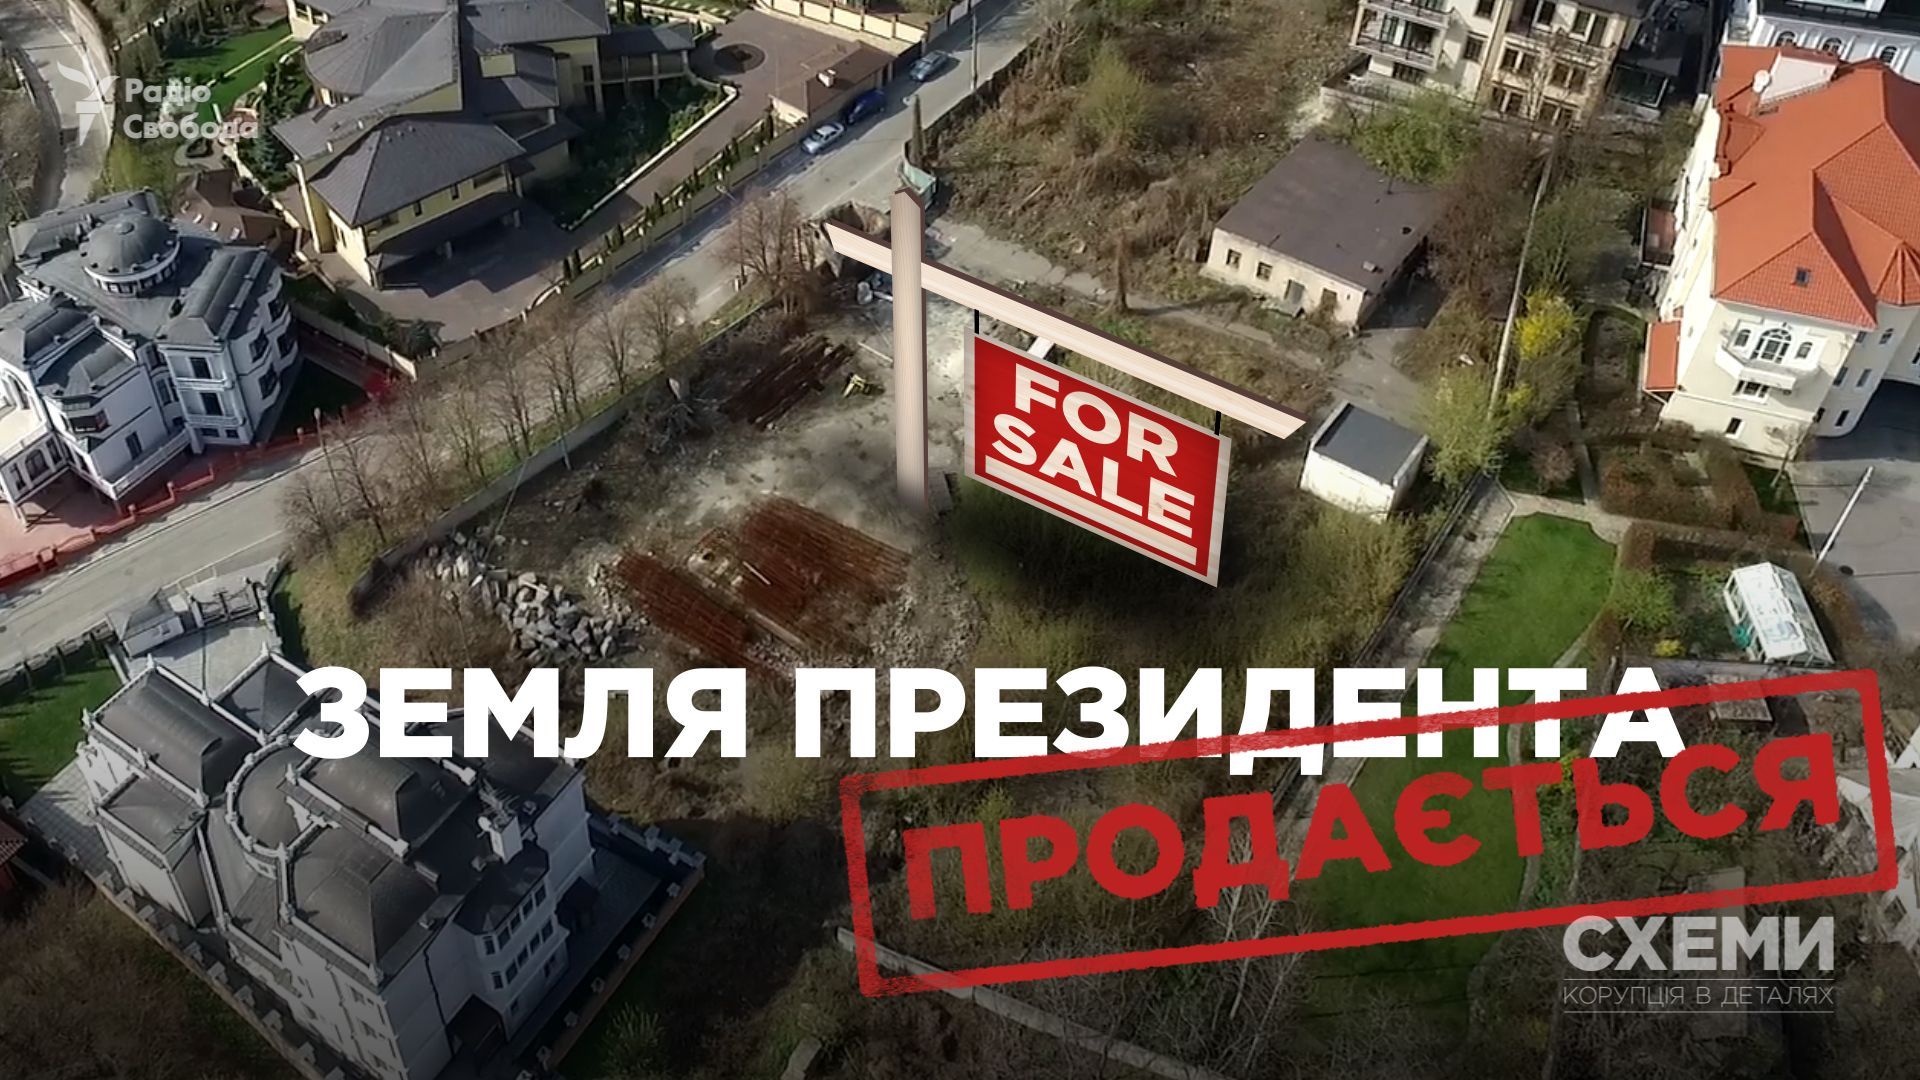 Порошенко виставив на продаж землю в Києві, отриману за допомогою незаконної оборудки